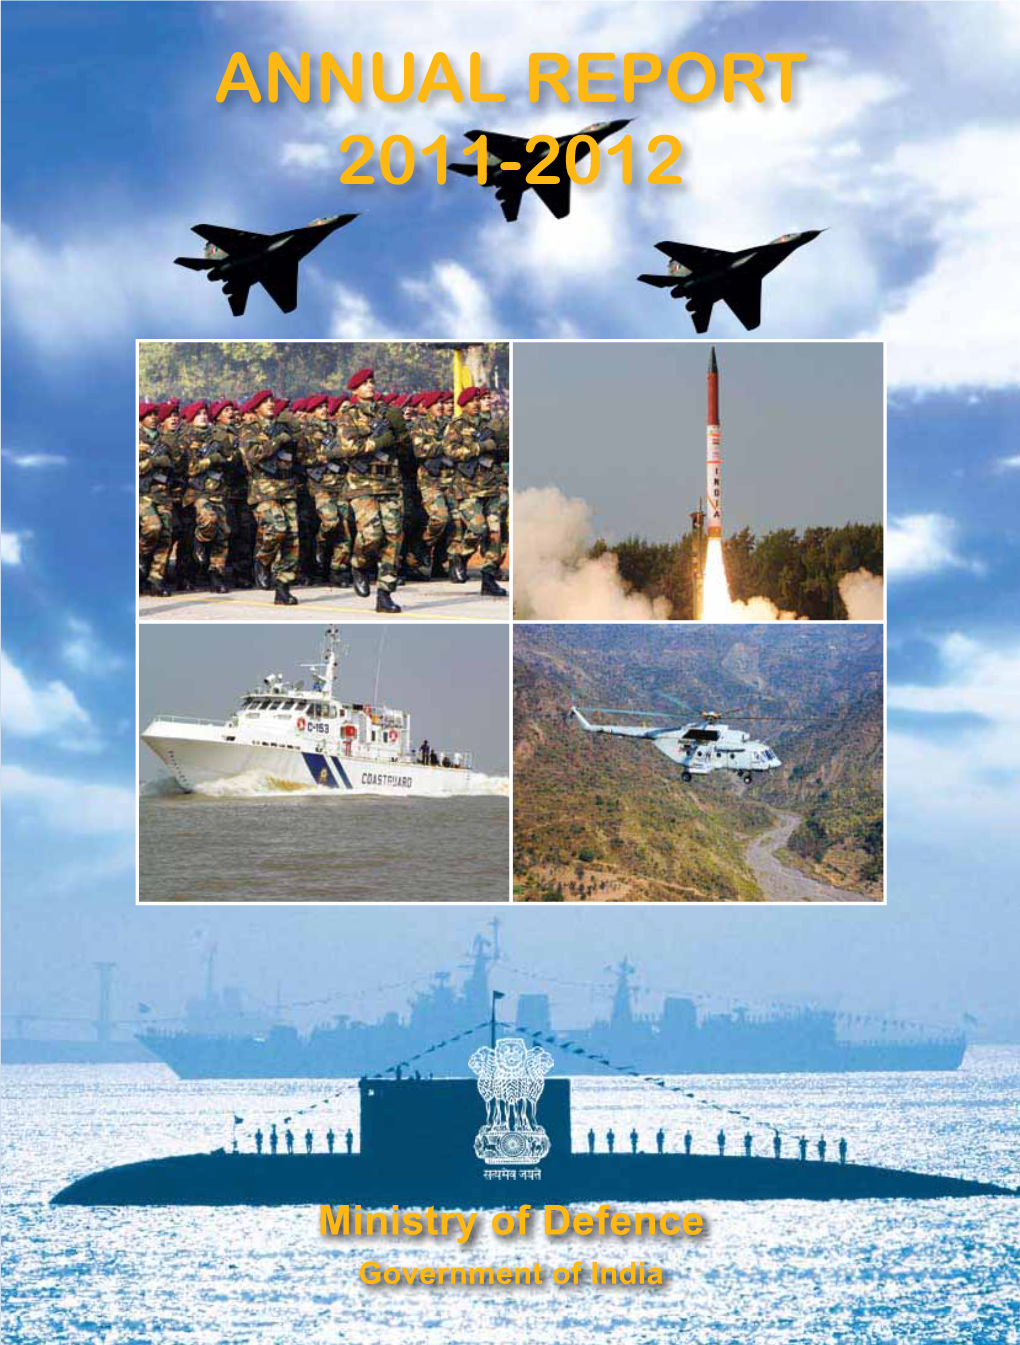 India: Annual Report 2011-2012